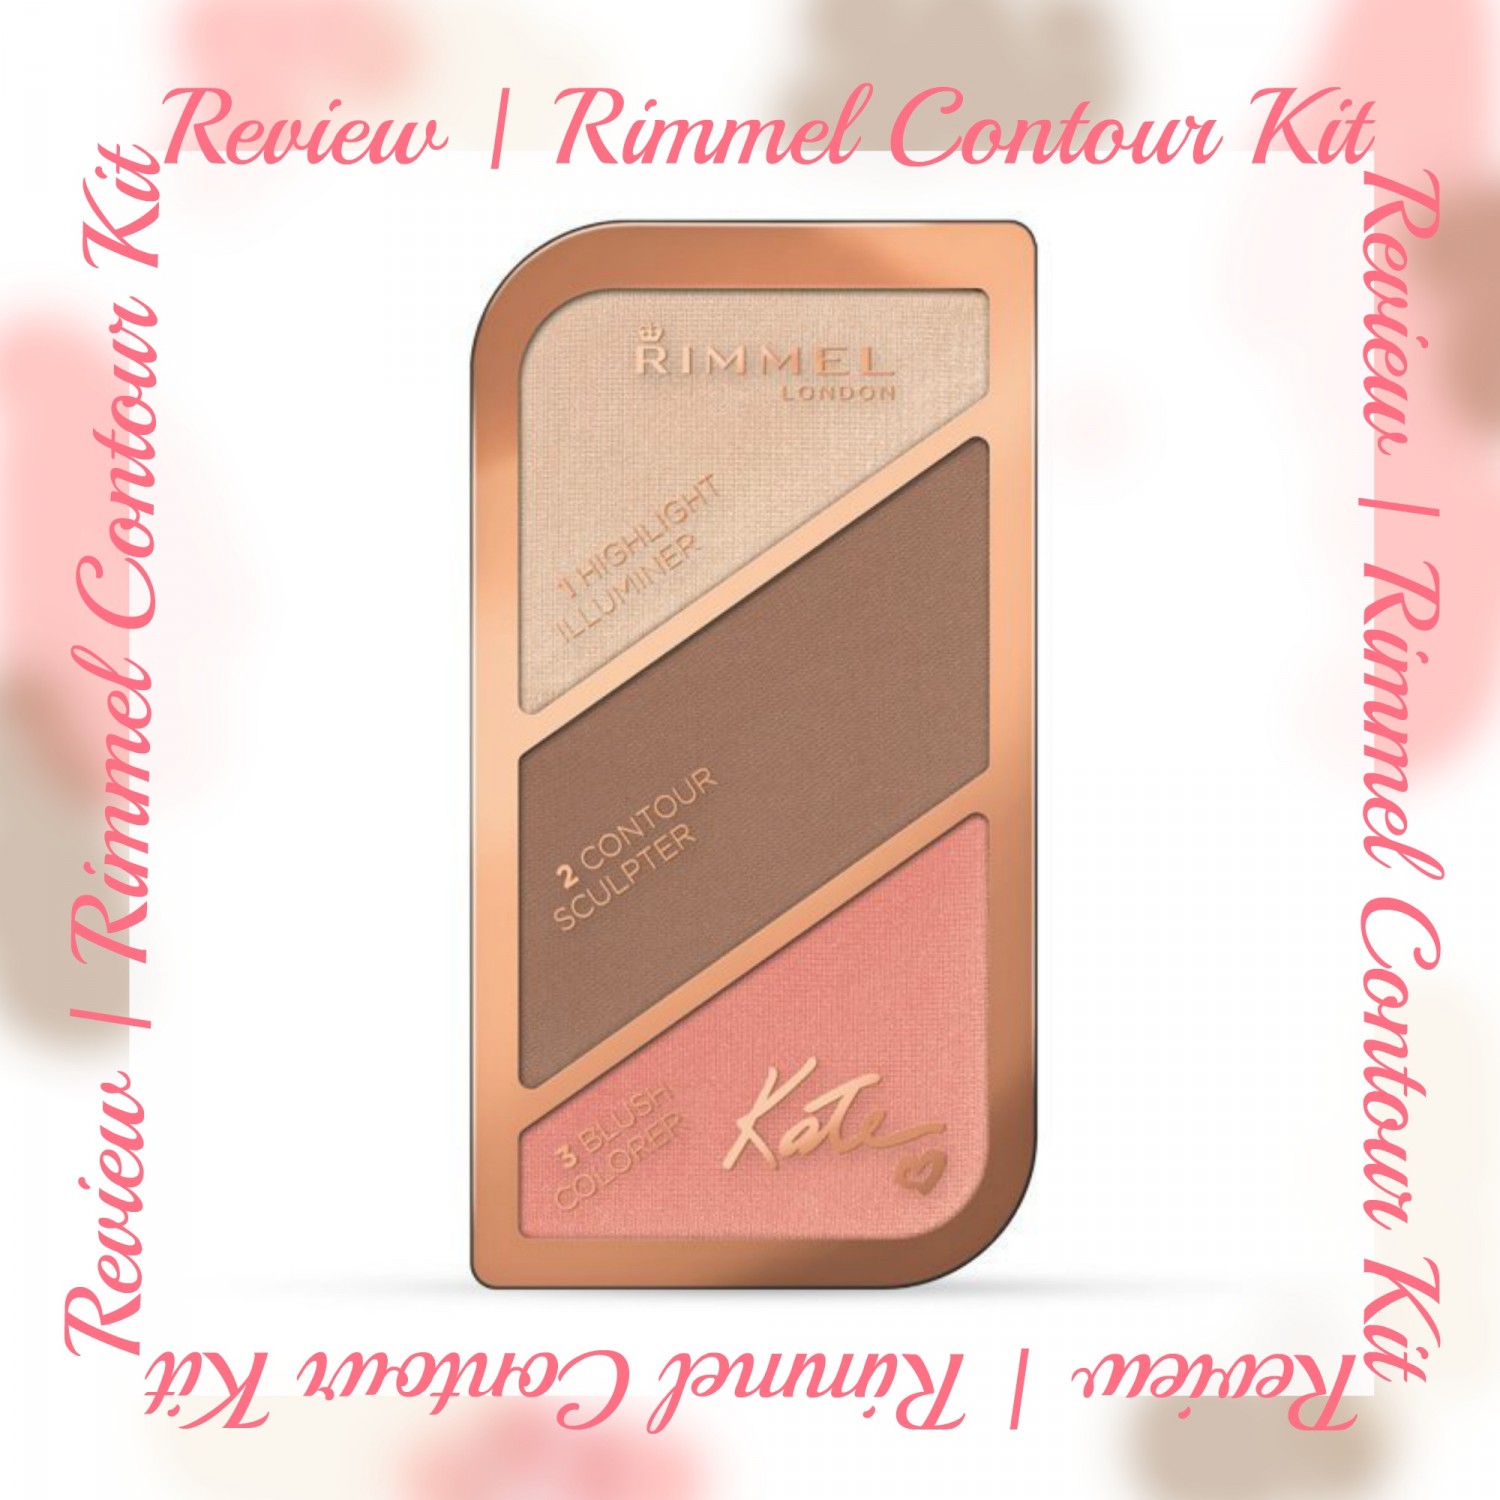 Rimmel contour kit review